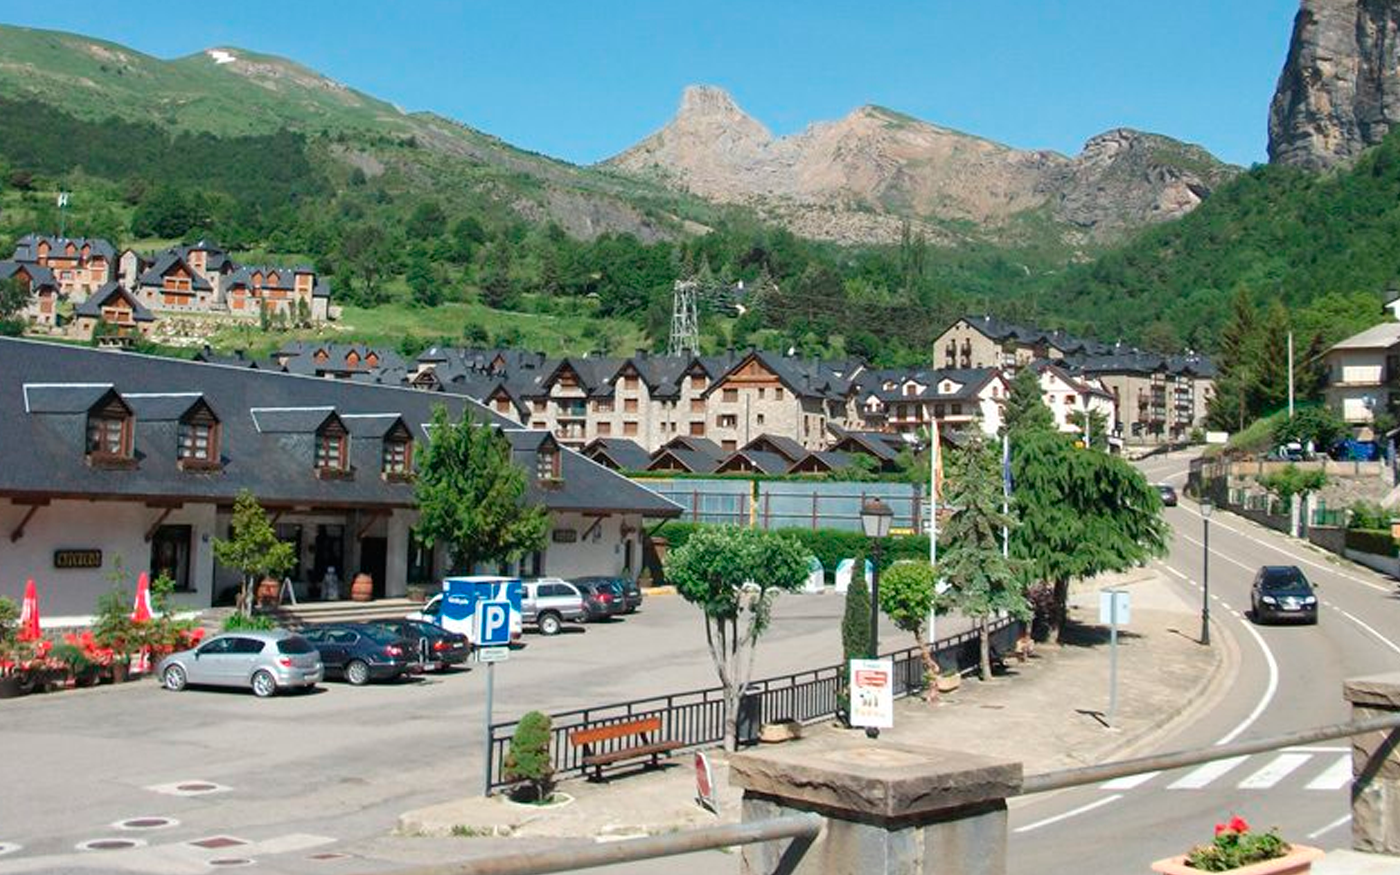 Descubriendo el Encanto de Escarrilla: Una Experiencia Inolvidable en el Valle de Tena, Huesca